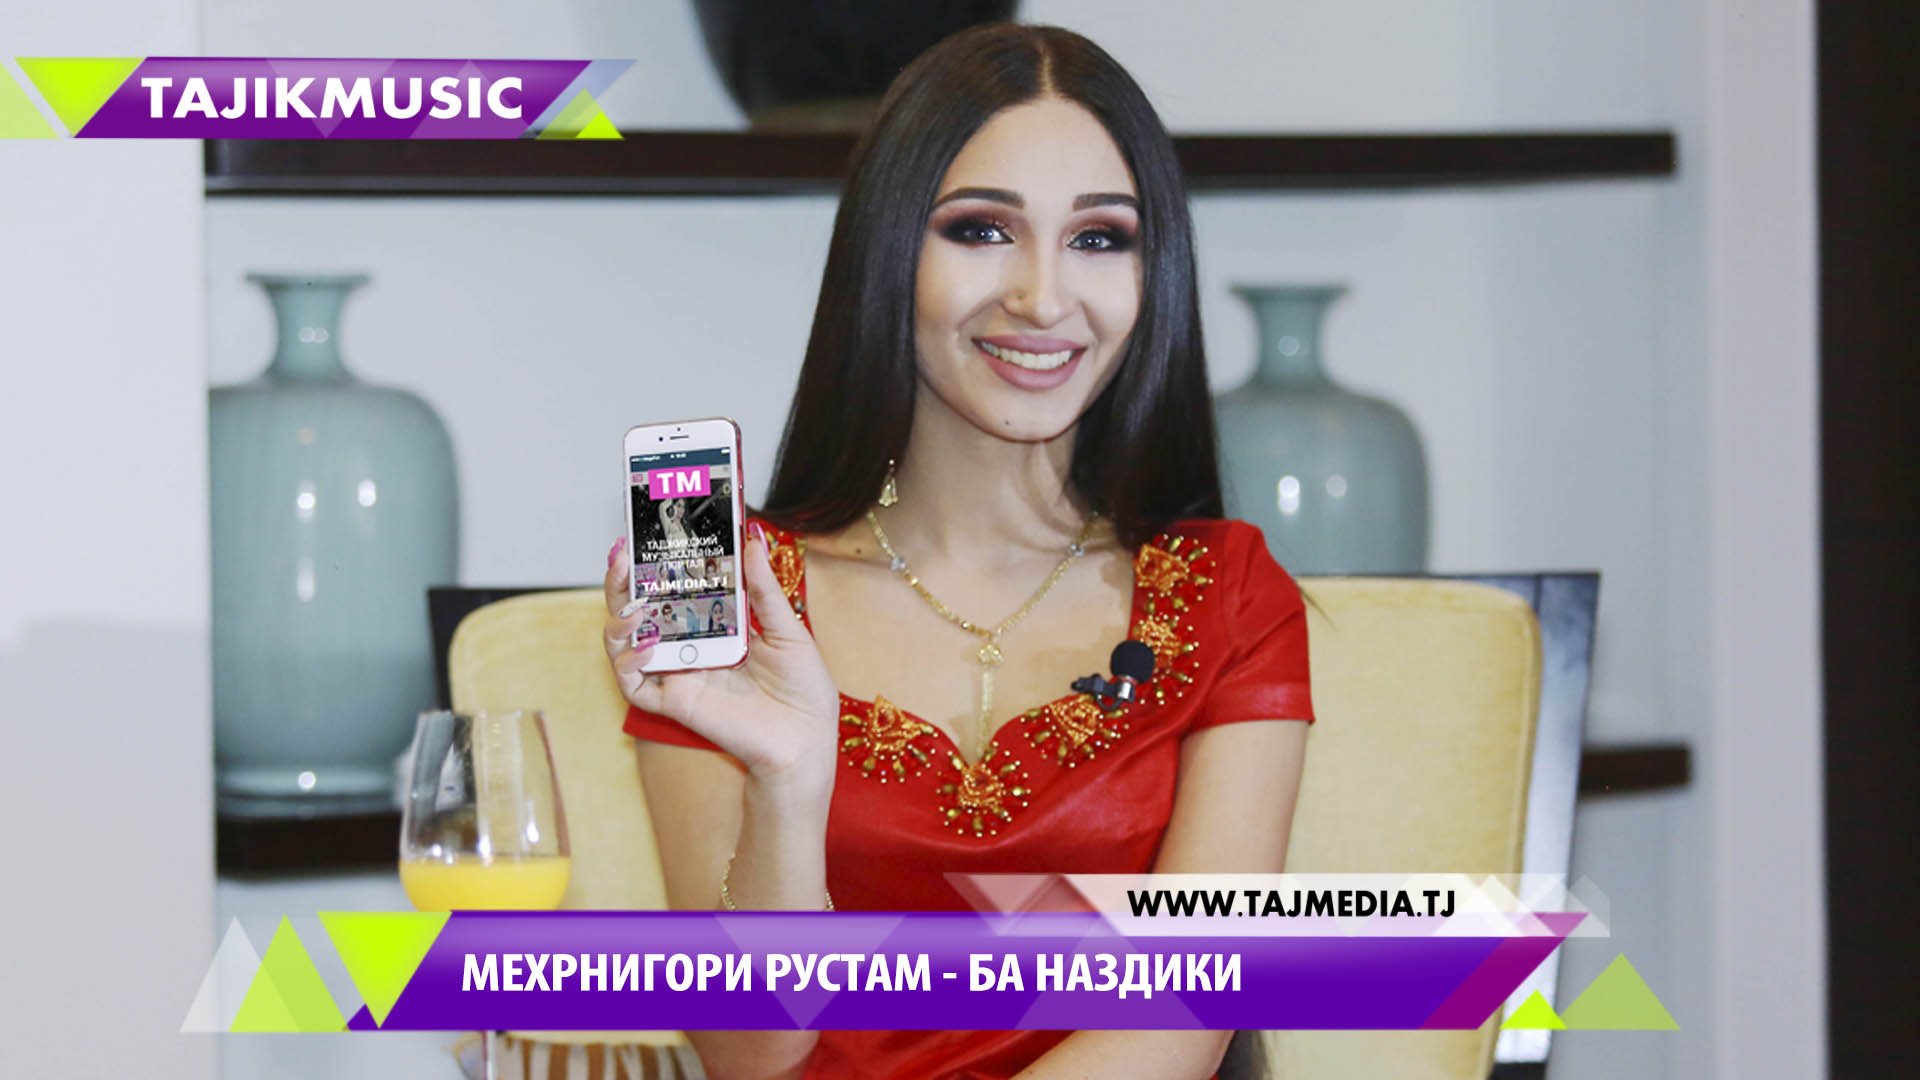 Скачать таджикскую музыку бесплатно 2017 новинки